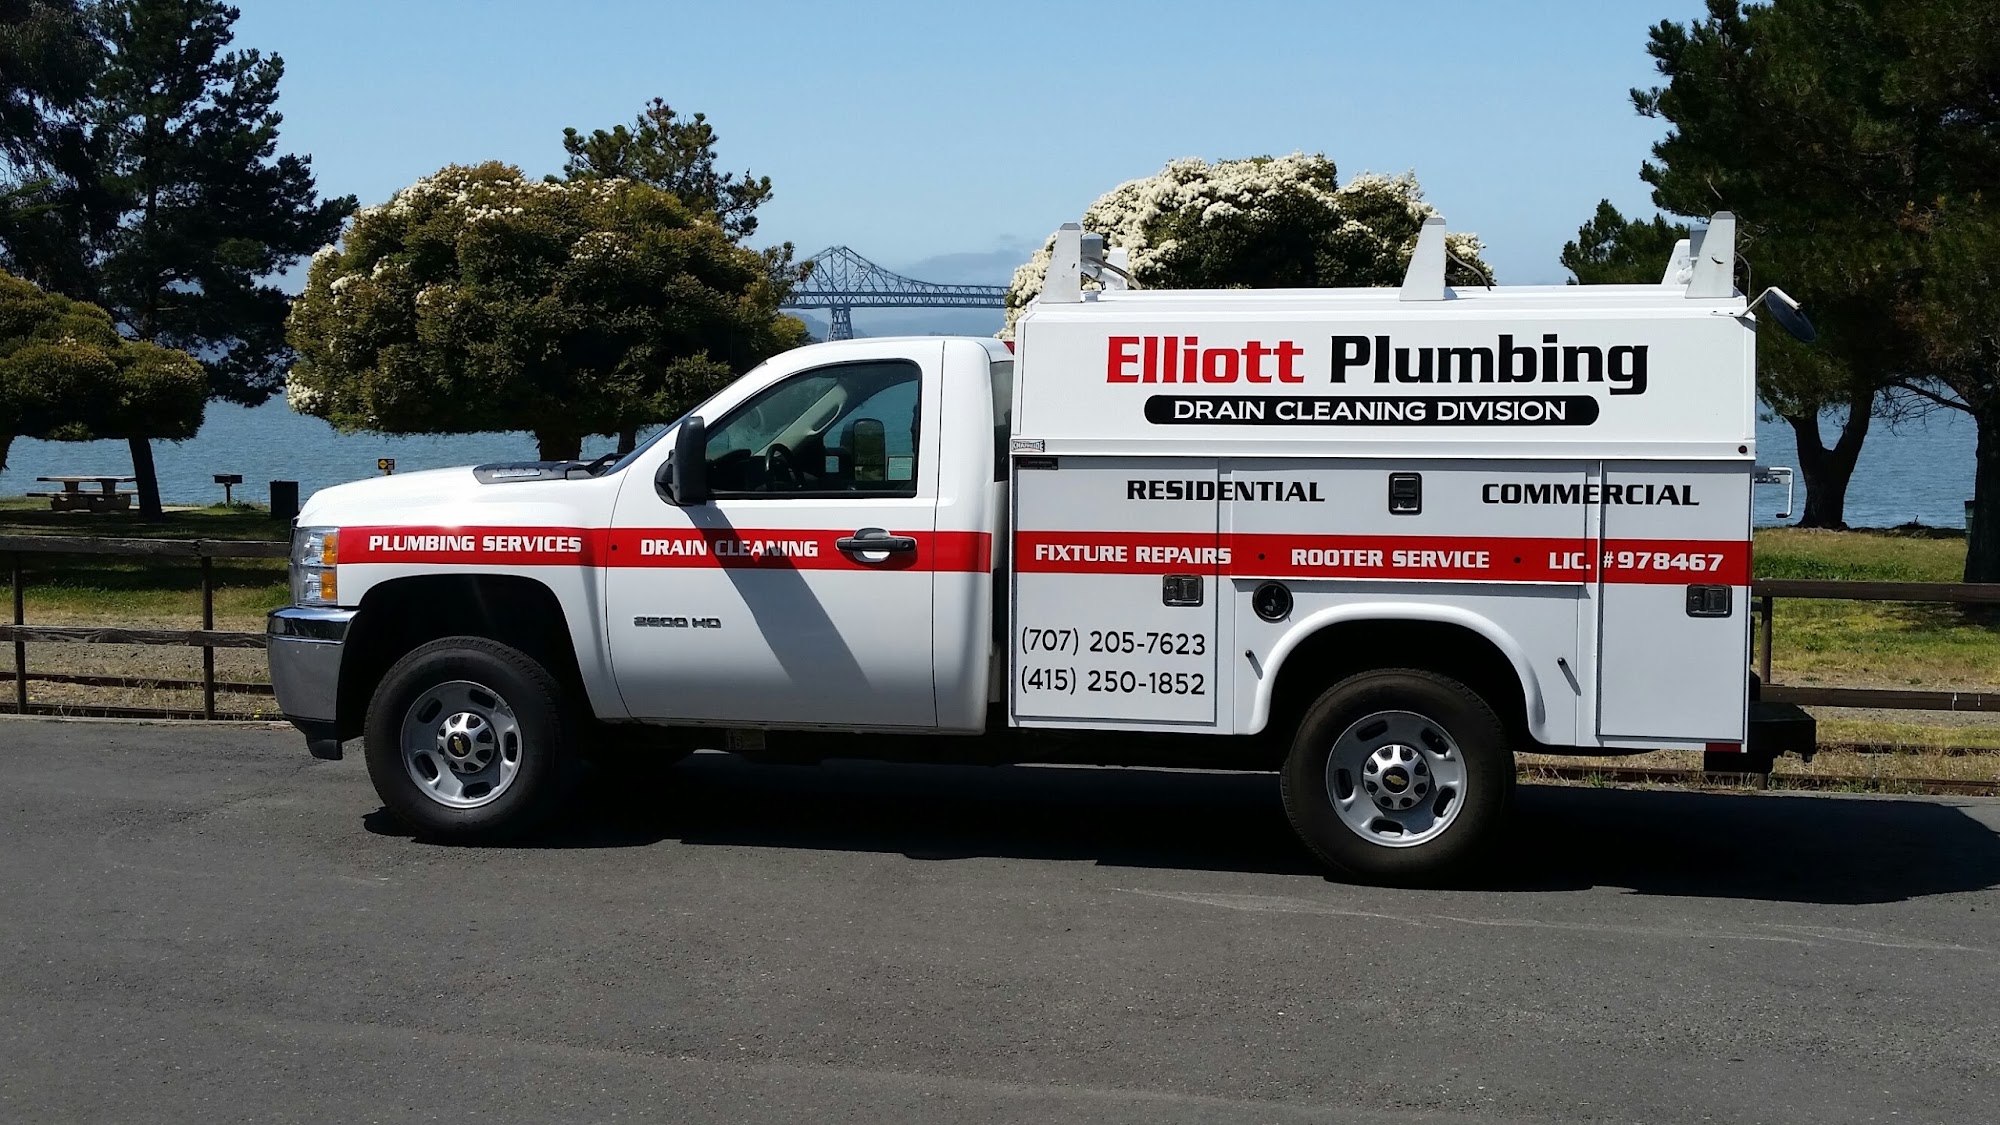 Elliott Plumbing 14510 Lakeshore Dr, Clearlake California 95422